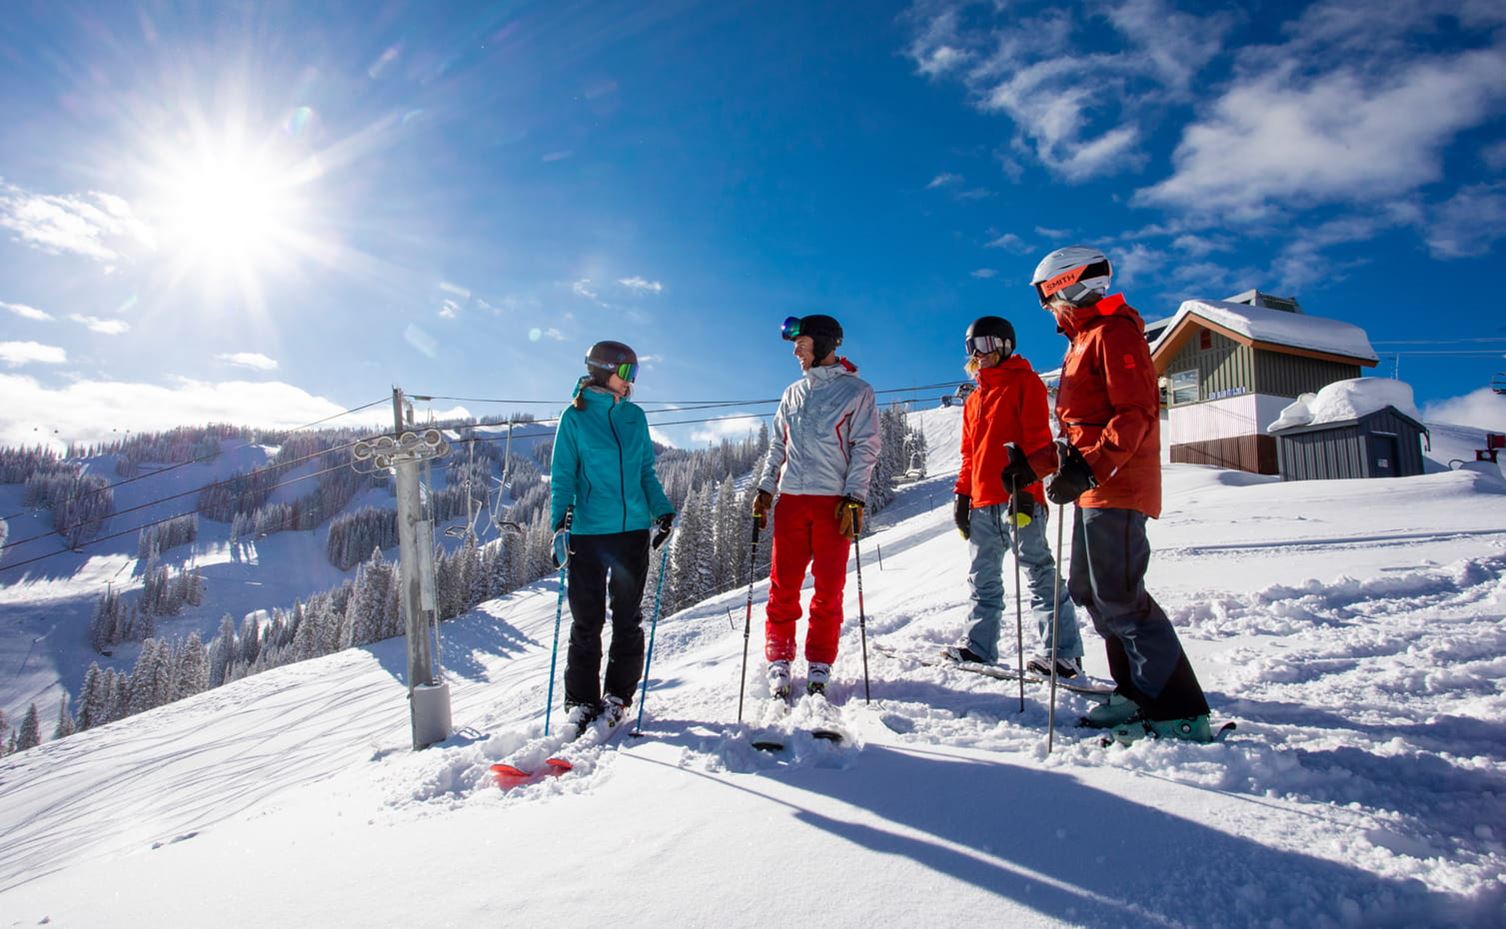 成人滑雪小组课程及滑雪技能提升课程